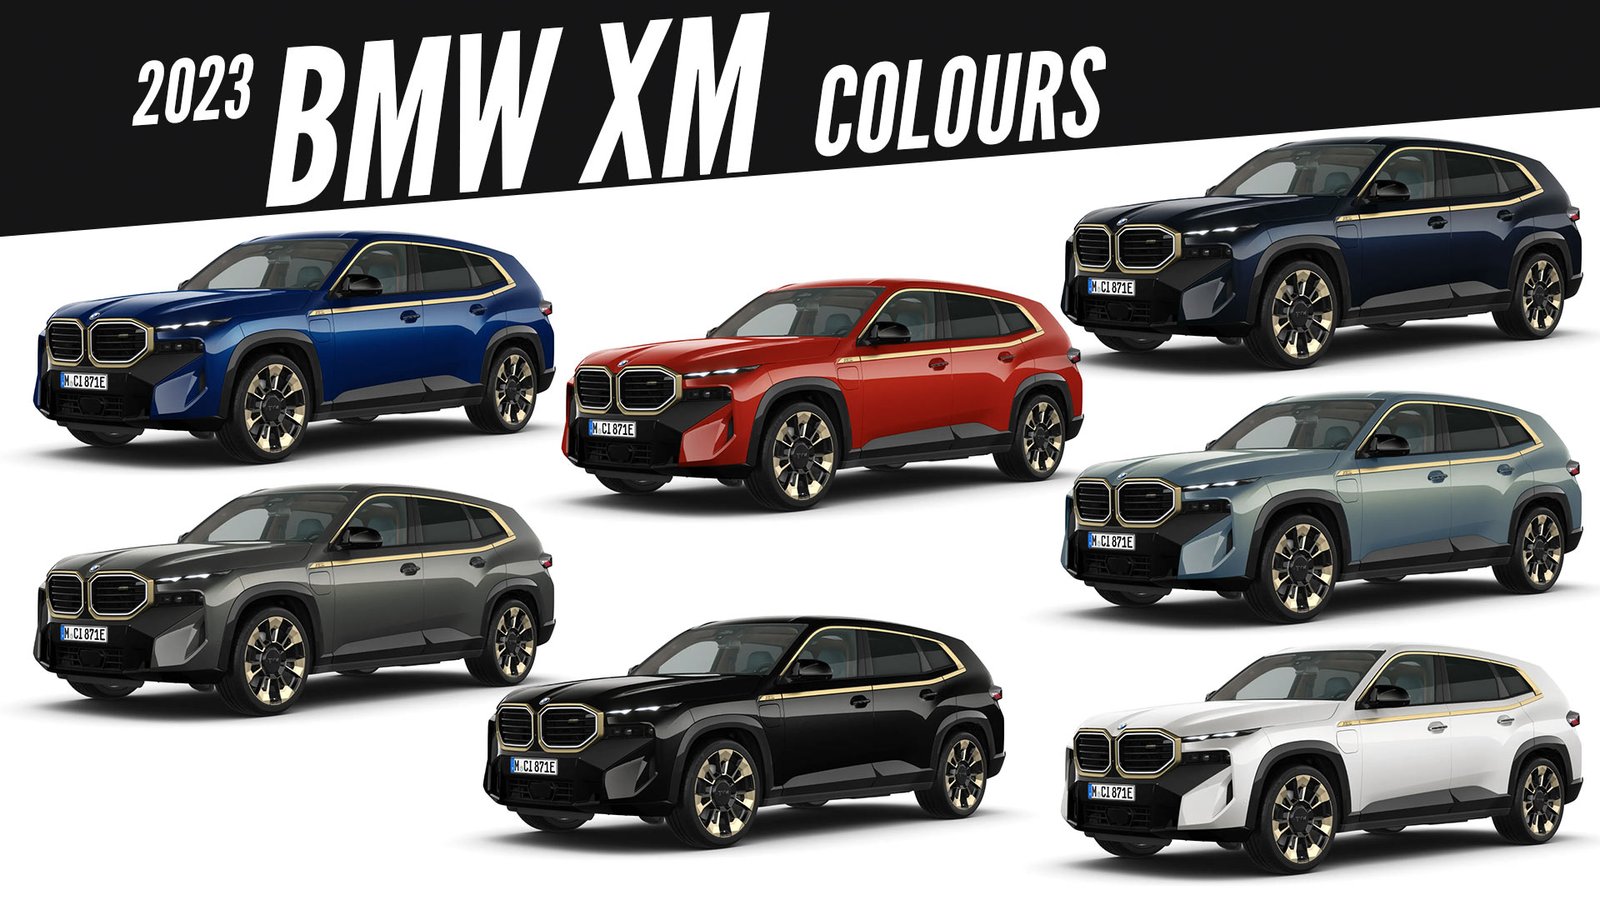 2023 BMW XM All Color Options Images AUTOBICS